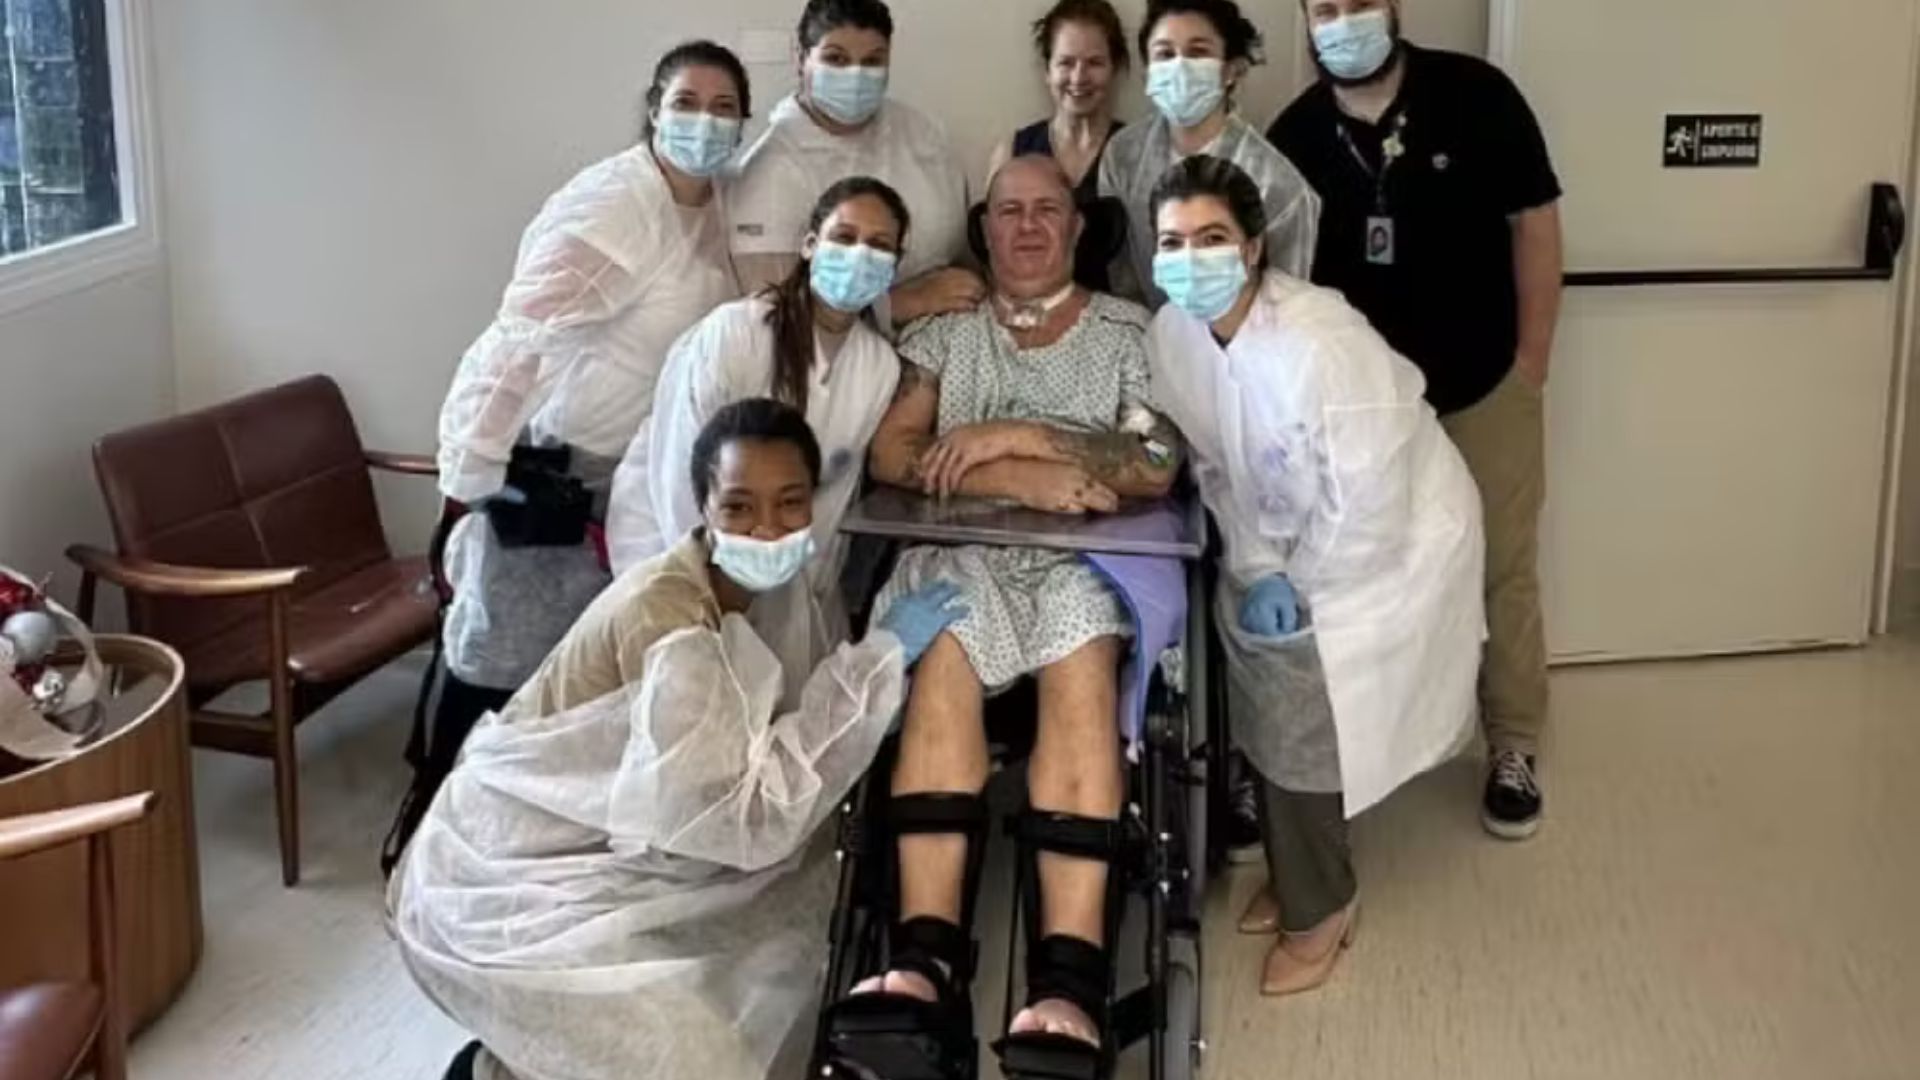 Mingau e a equipe médica - Reprodução/Instagram